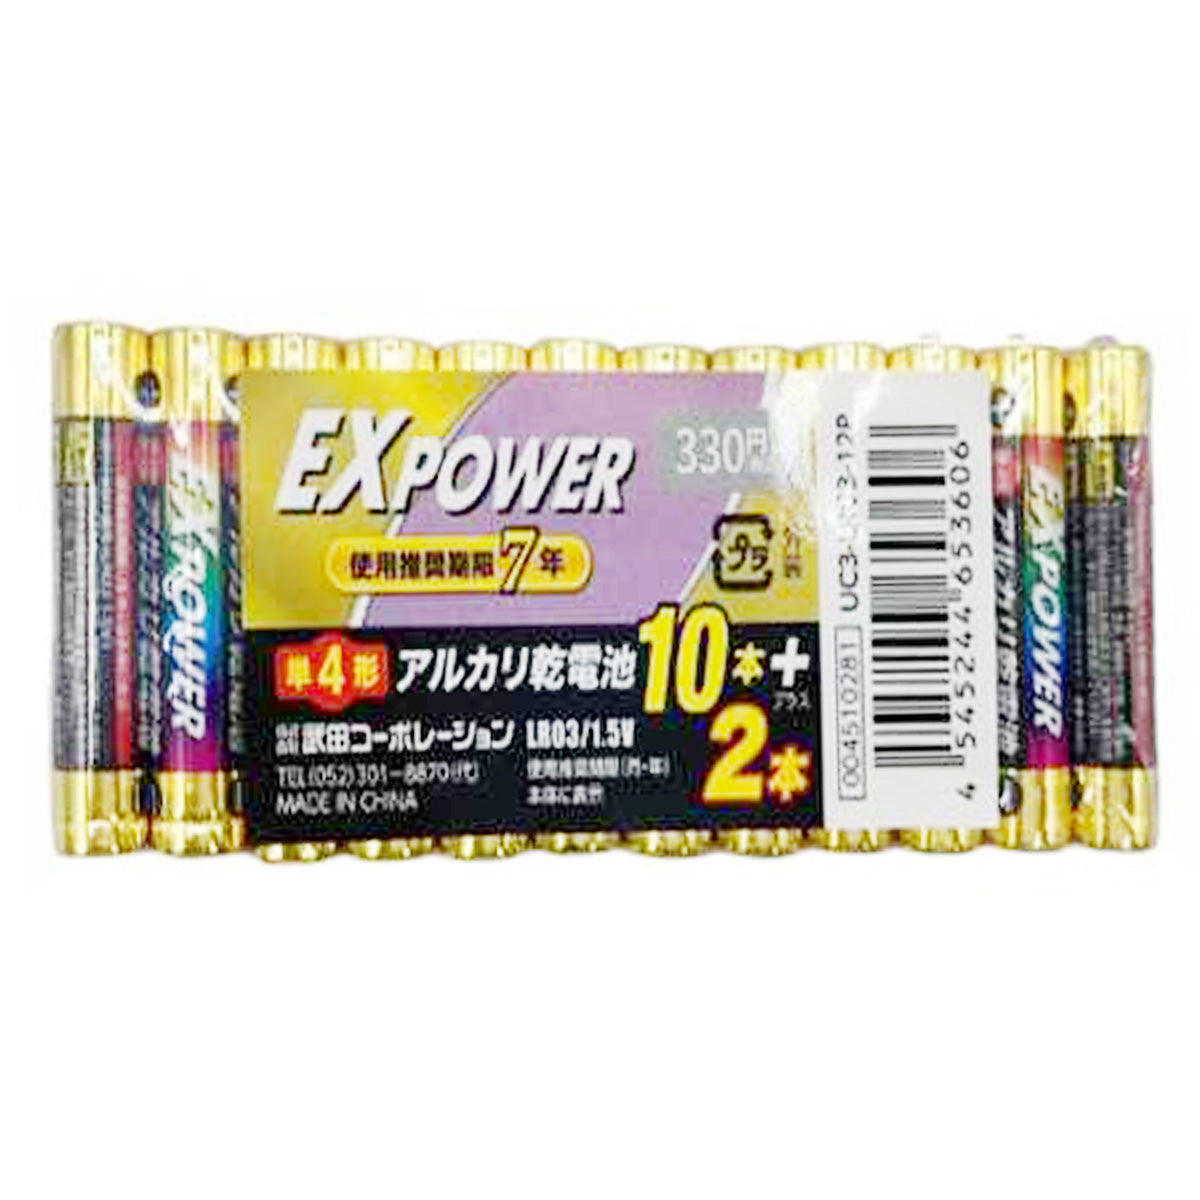 電池 単4形 武田コーポレーション アルカリ乾電池 EXPOWER 12本 9001/341588